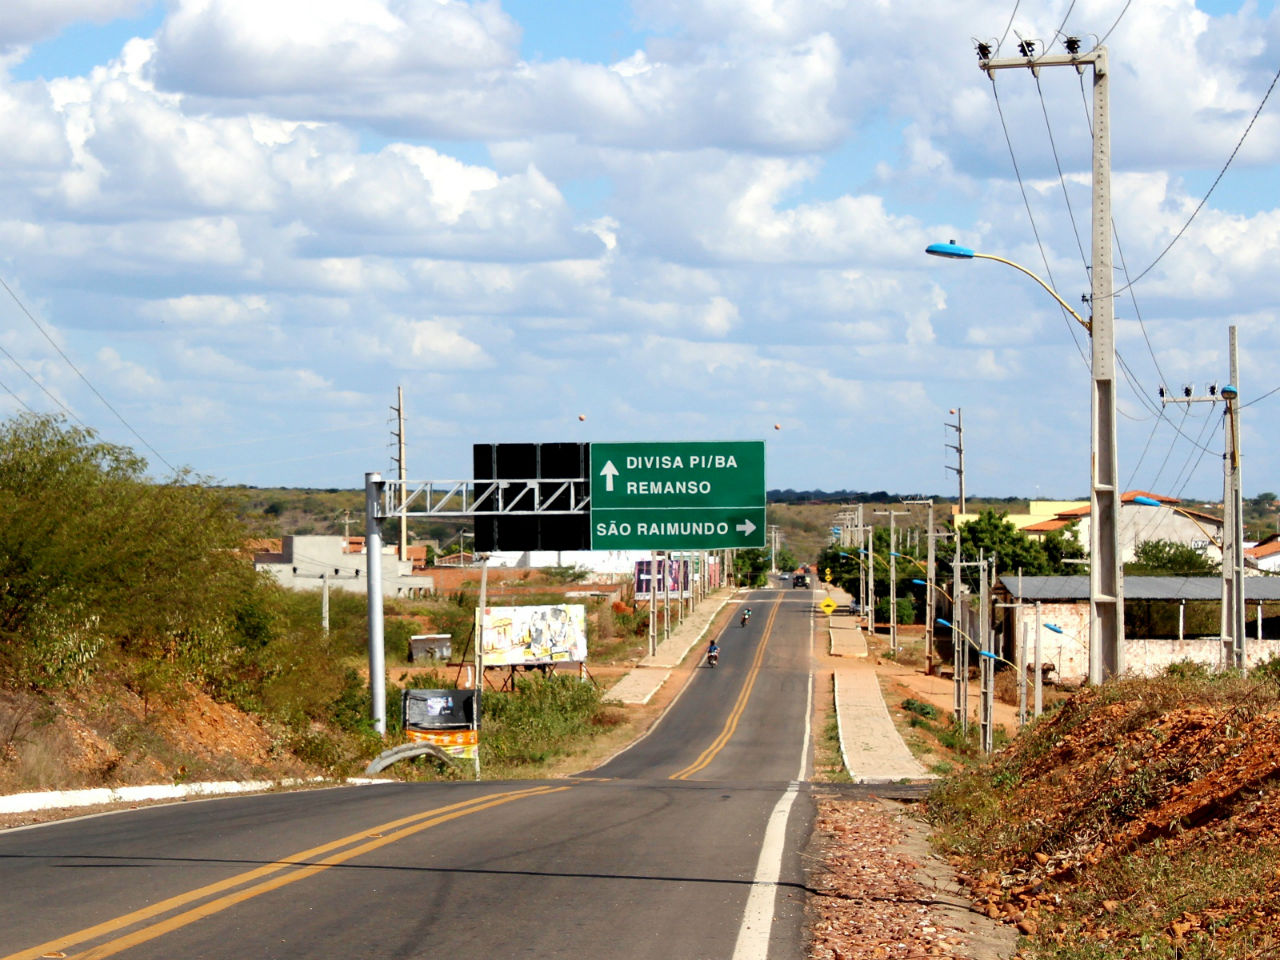 Путь от автовокзала Сан-Раймунду-Нонату к центру города: первый поворот направо, далее без вариантов Сан-Раймунду-Нонату, Бразилия